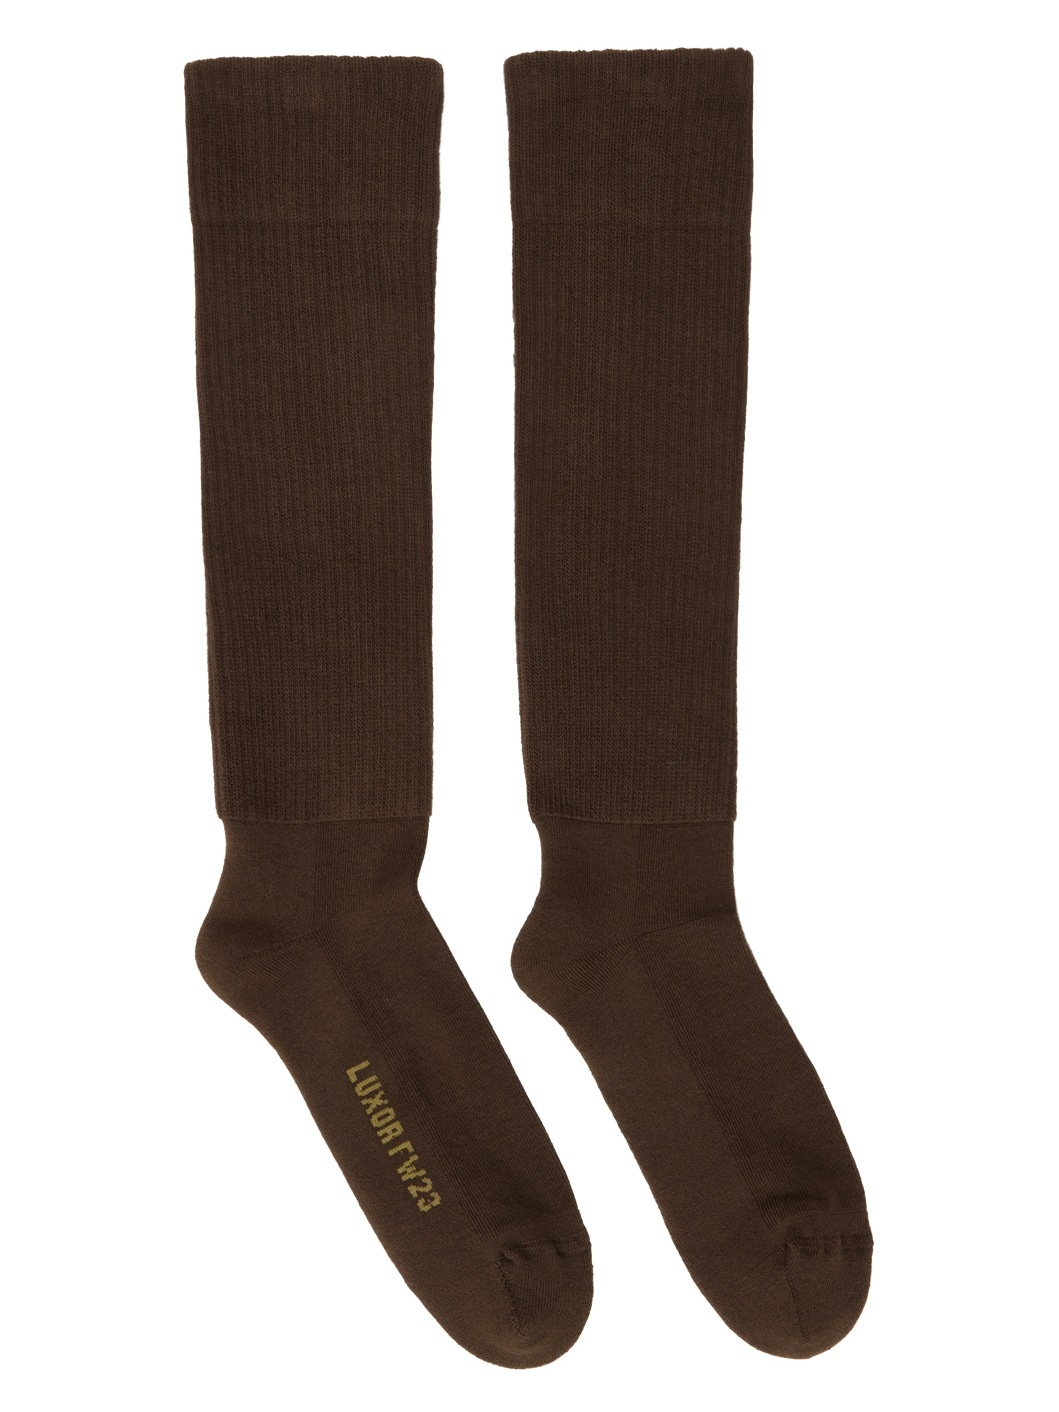 Brown Knee High Socks - 1